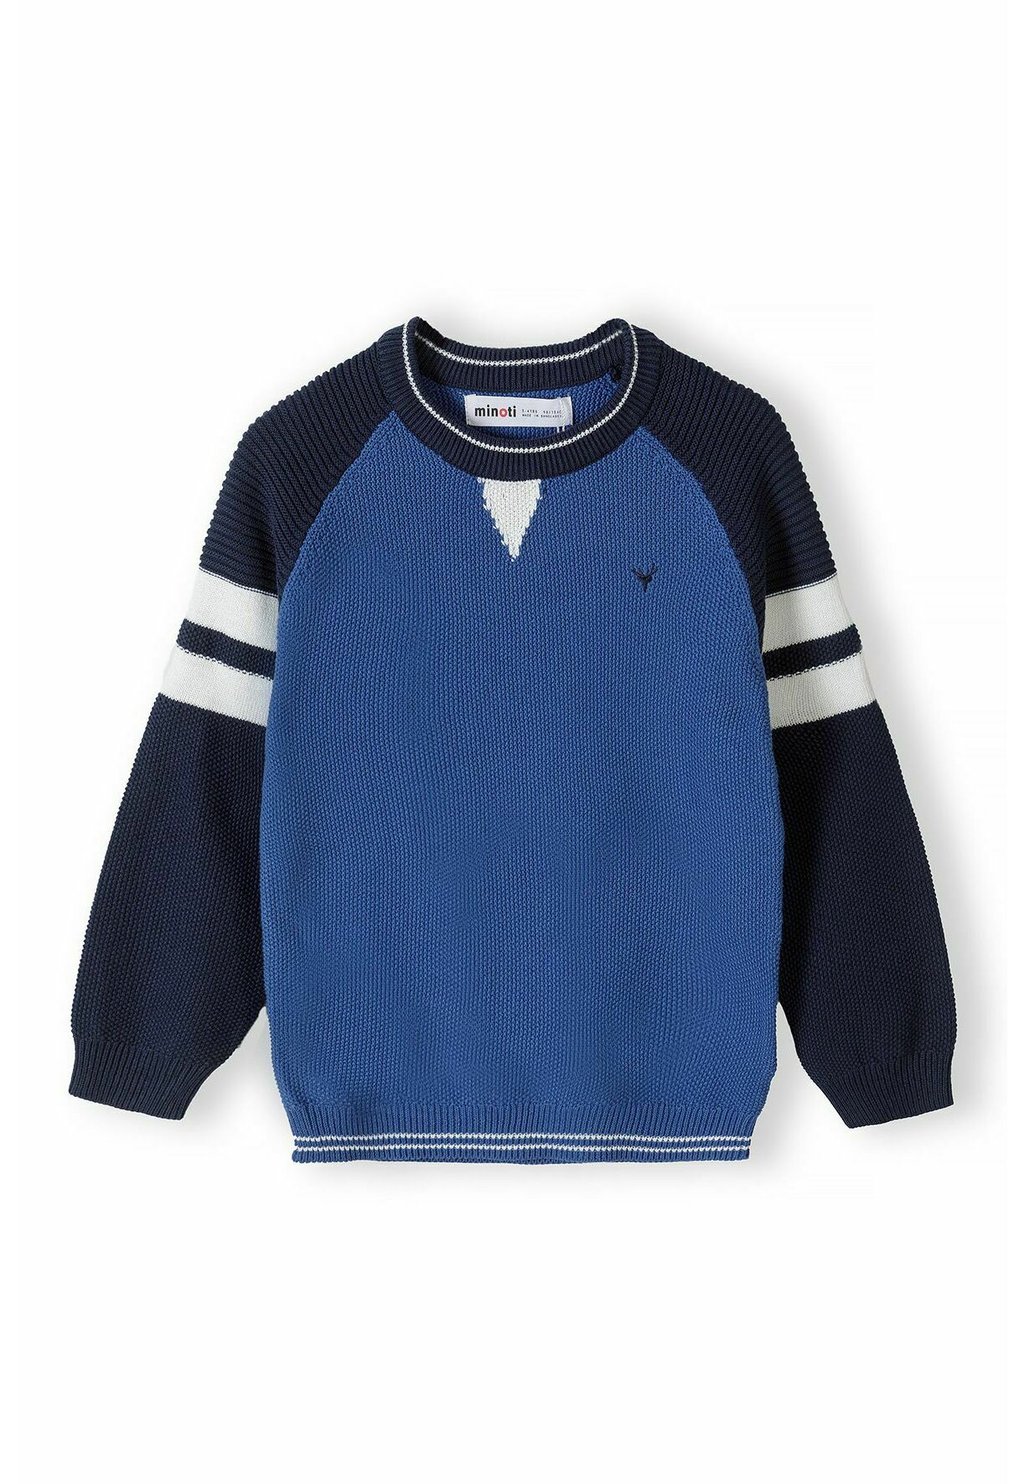 Вязаный свитер CREW NECK MINOTI, цвет blue navy вязаный свитер round neck falconeri цвет blue navy